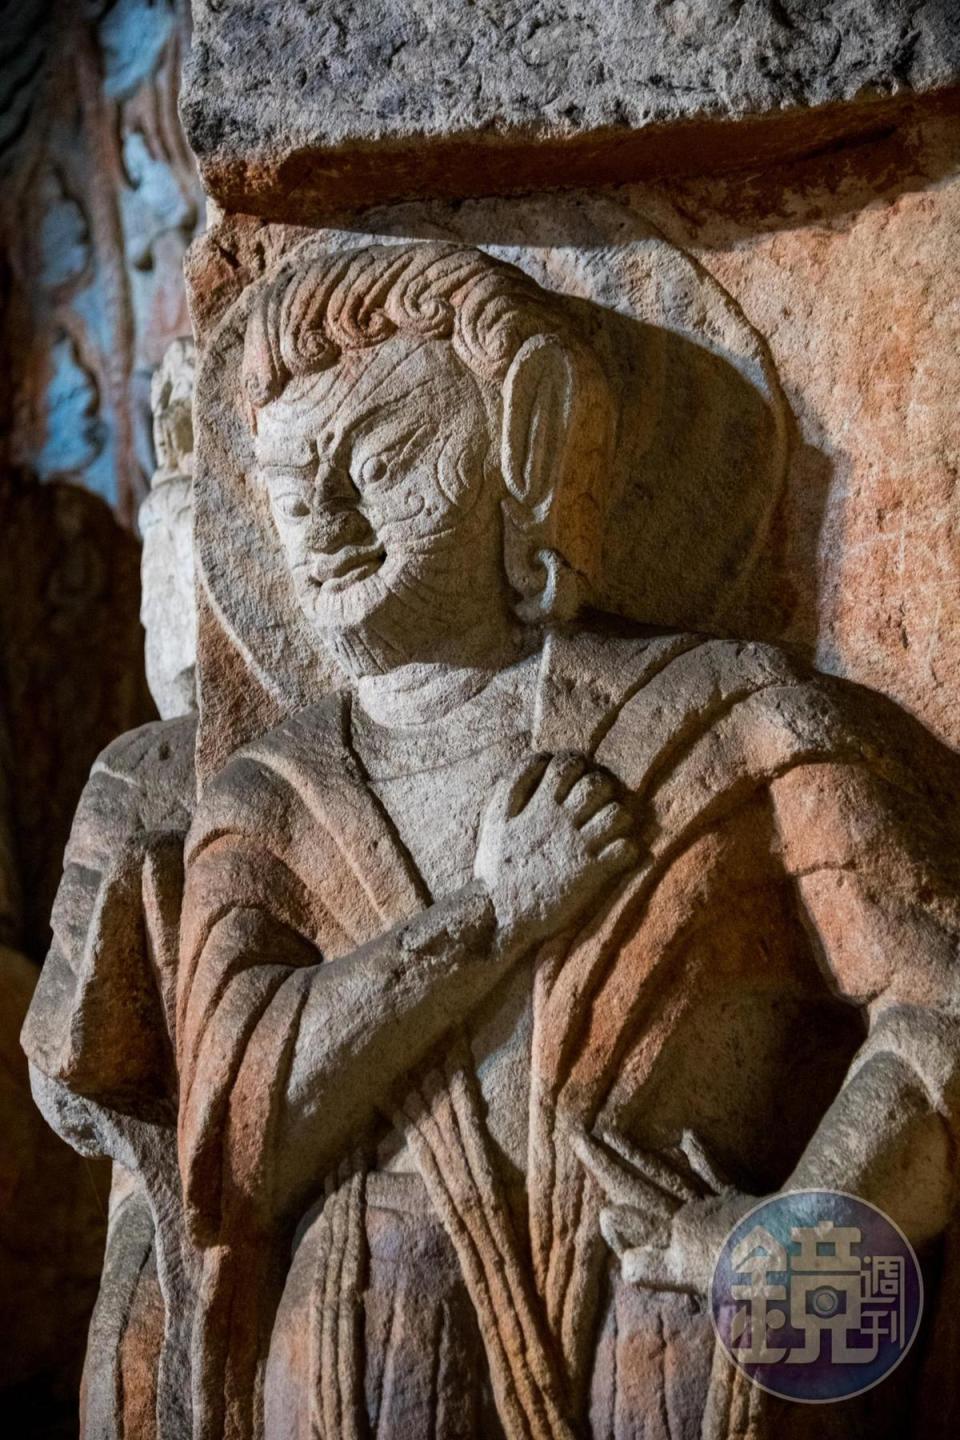 雲岡石窟出現外國人面貌的雕像。